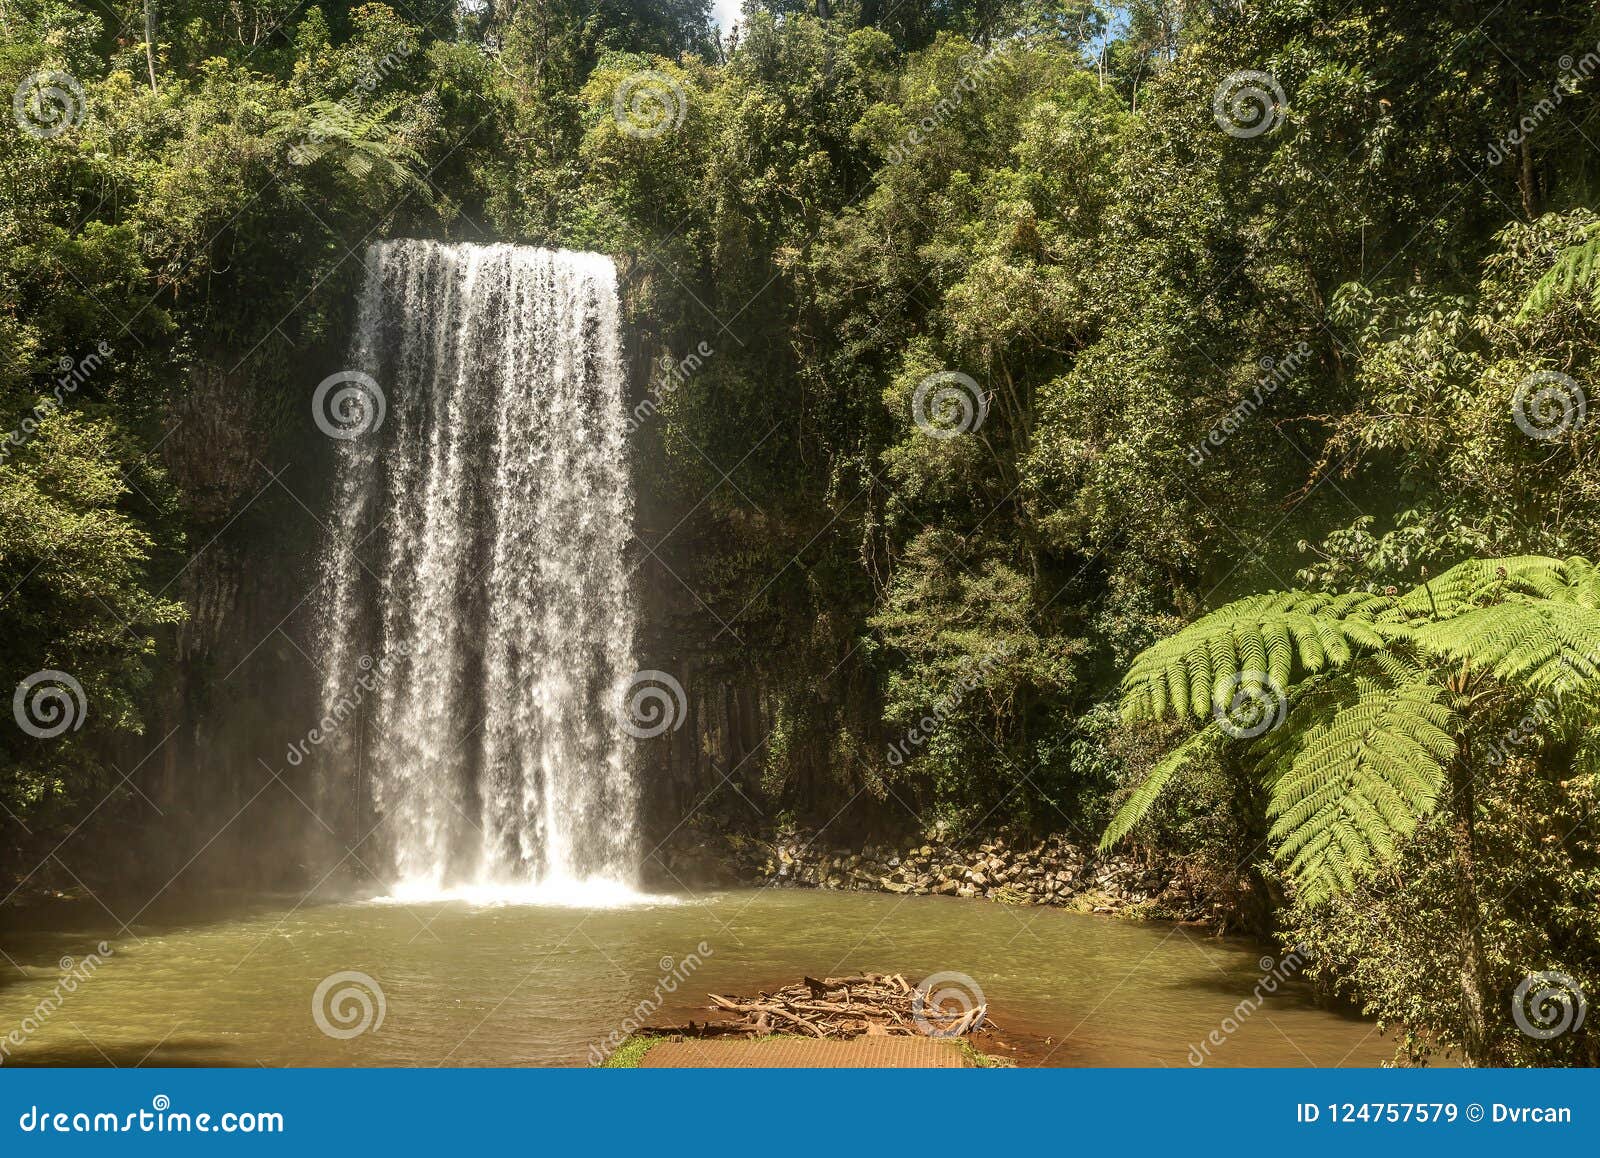 milla nilla falls in queensland, australia